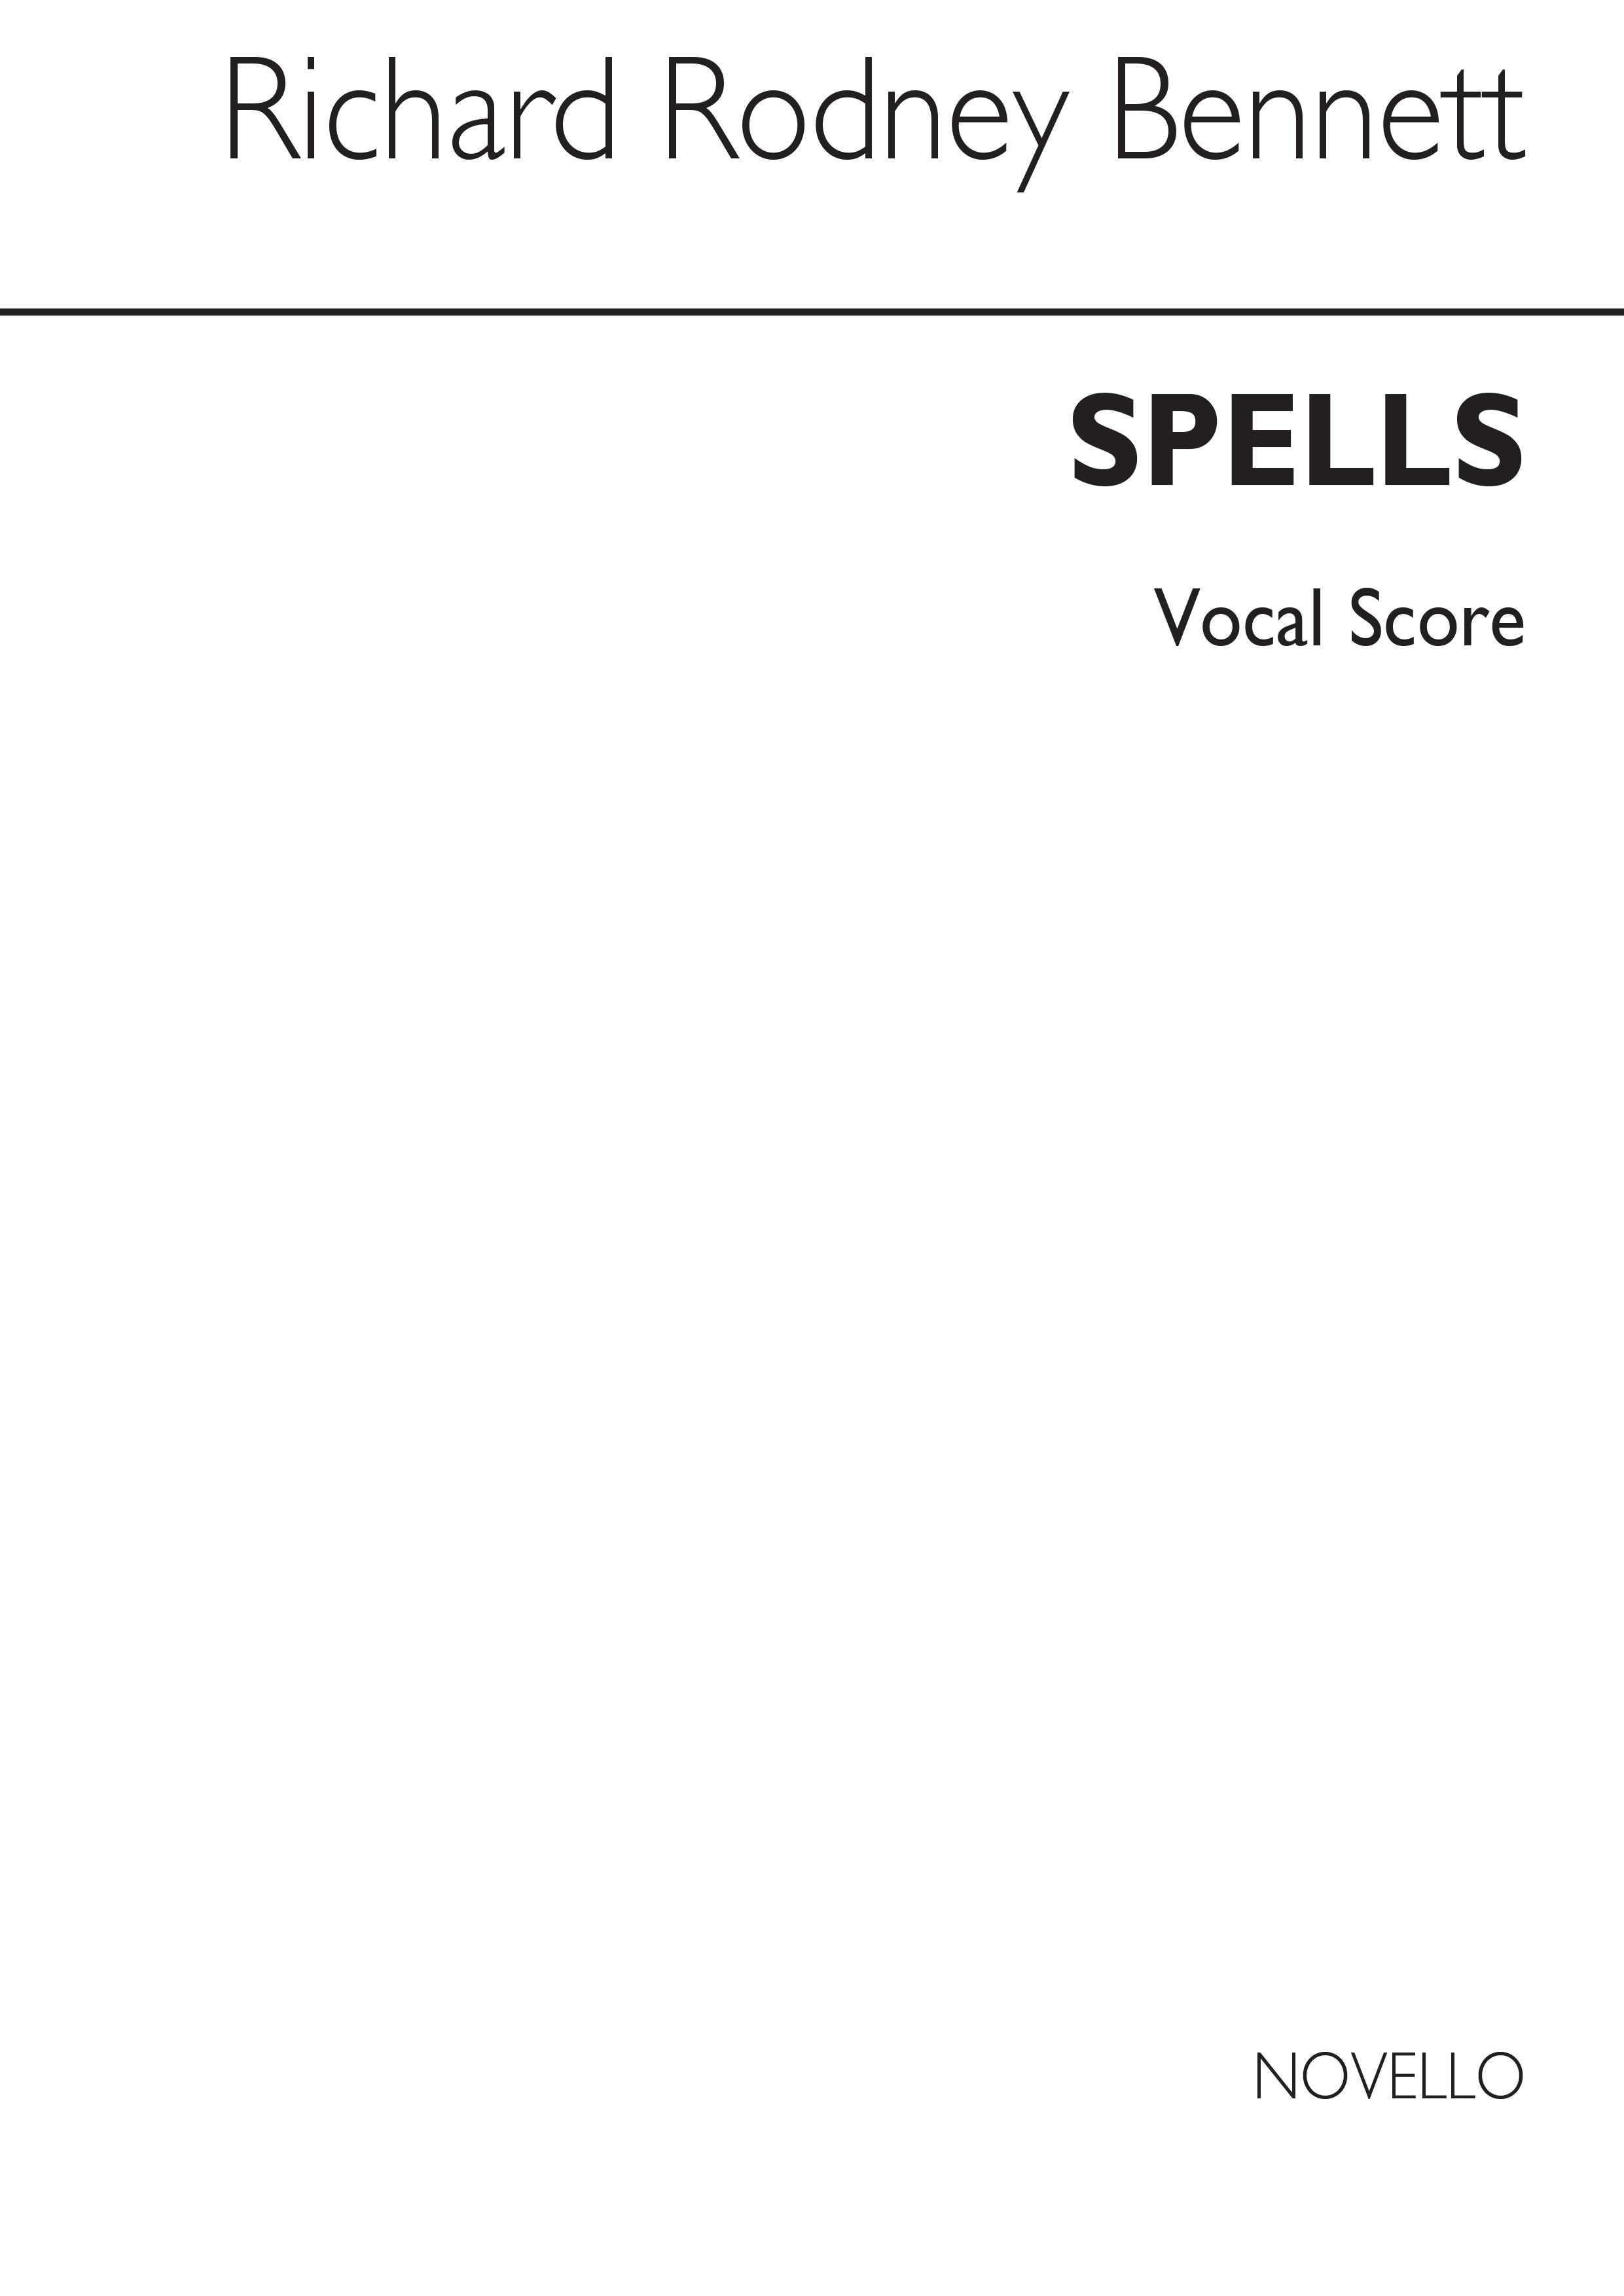 RR Bennett: Spells (Vocal Score)